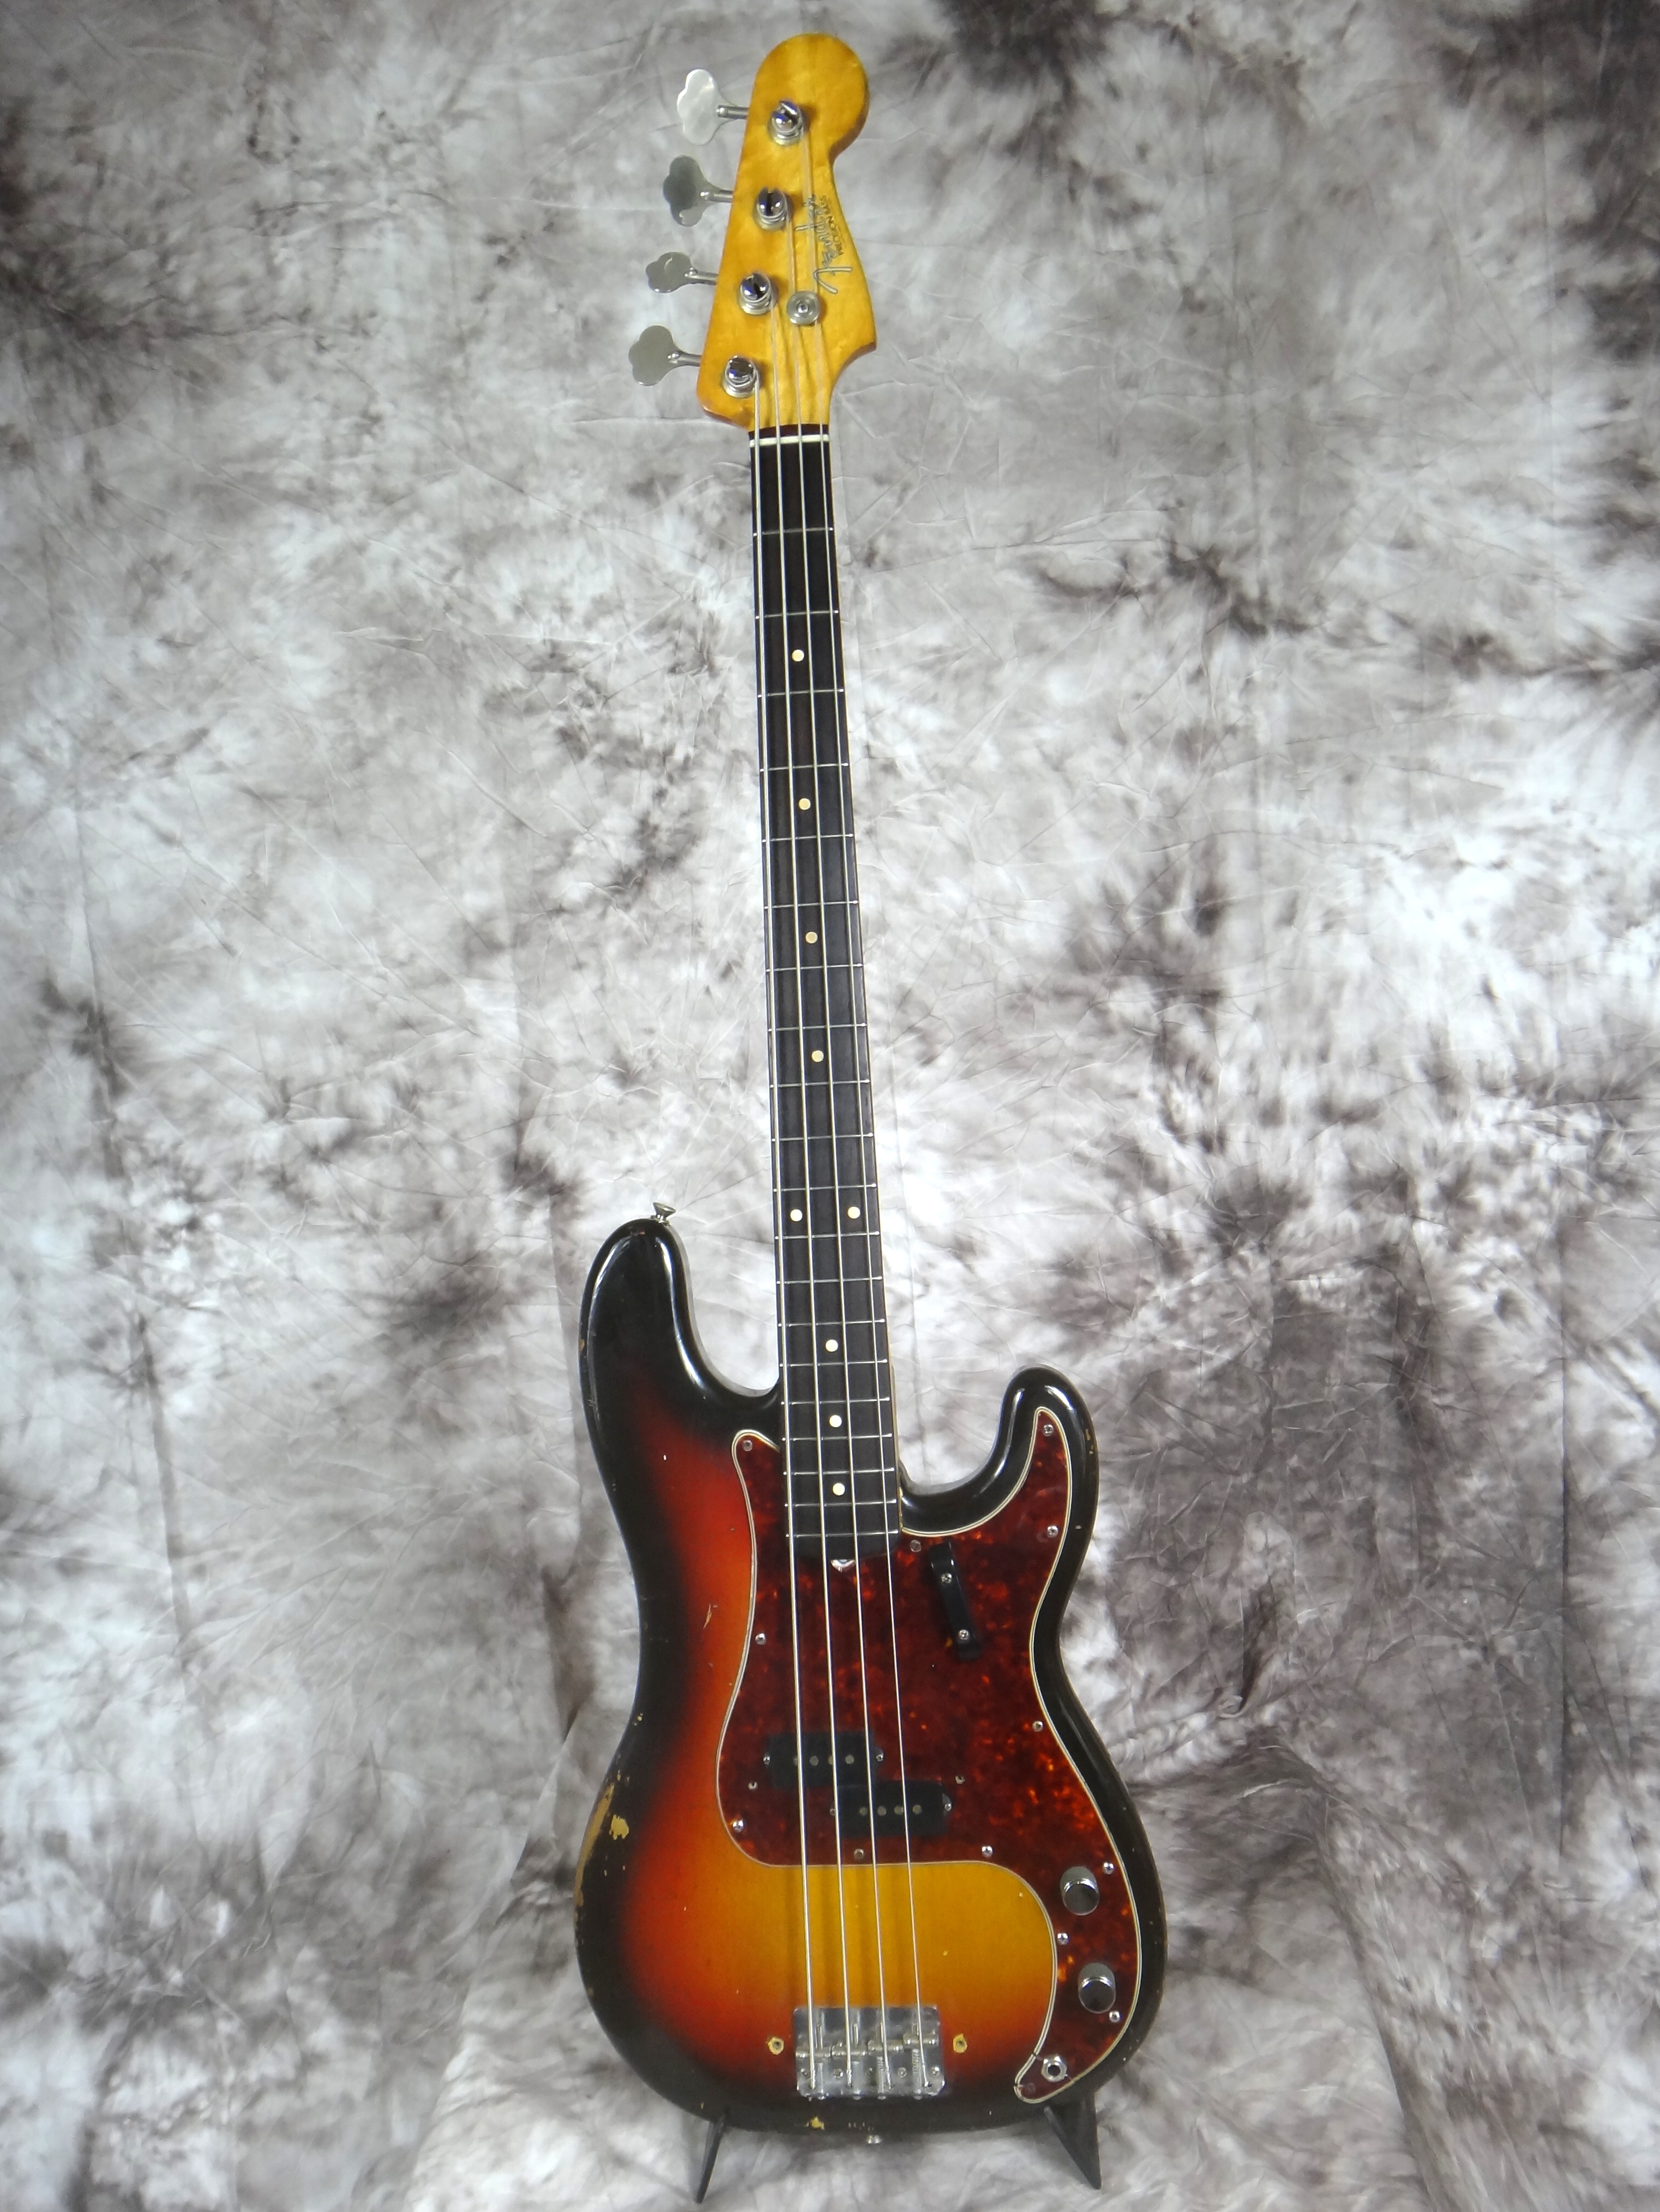 Fender_Precision_1962-sunburst-001.JPG